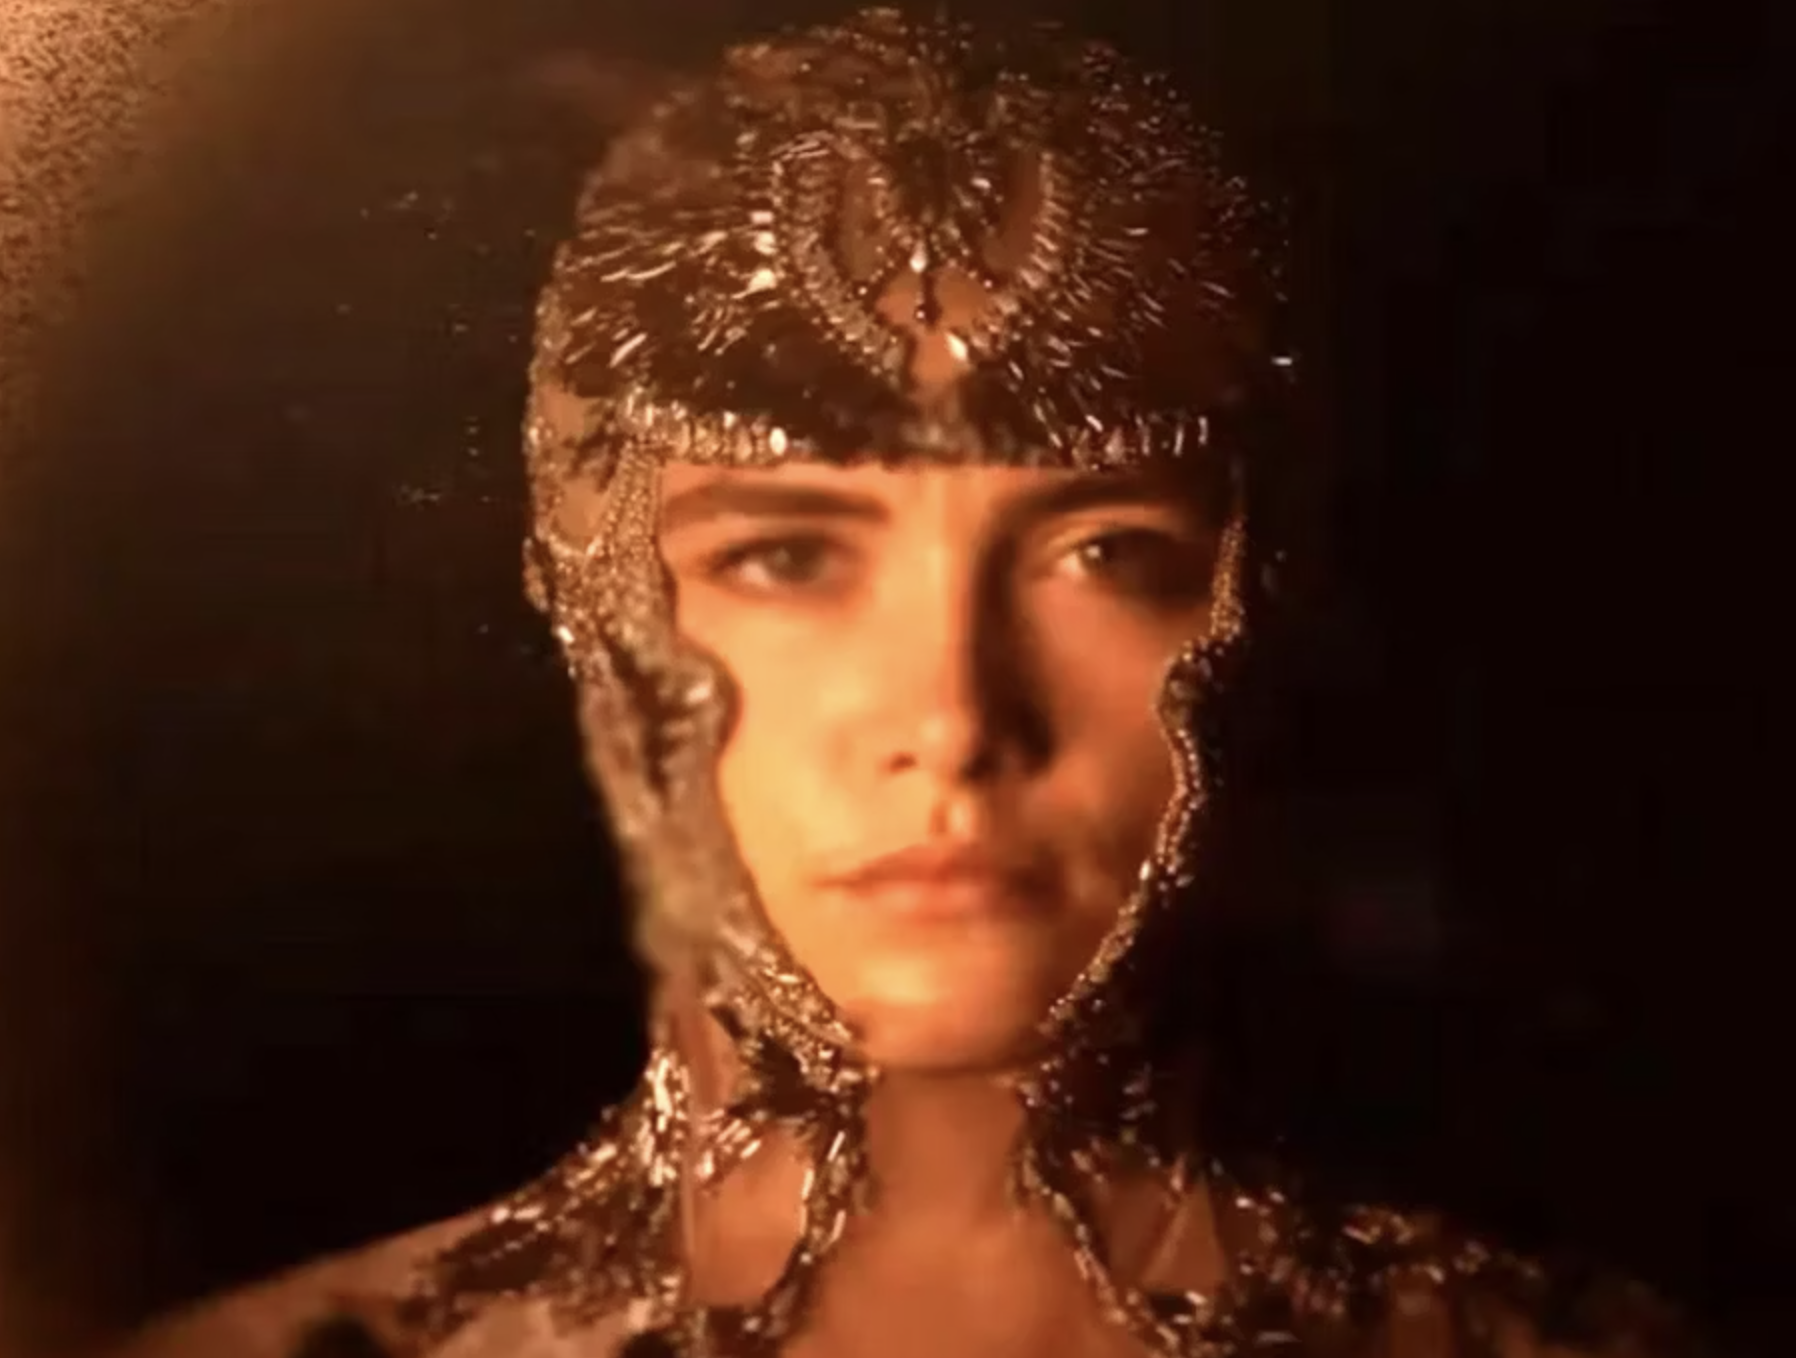 Persona con tocado y maquillaje de efectos especiales que simula líquido metálico sobre su cabeza y rostro